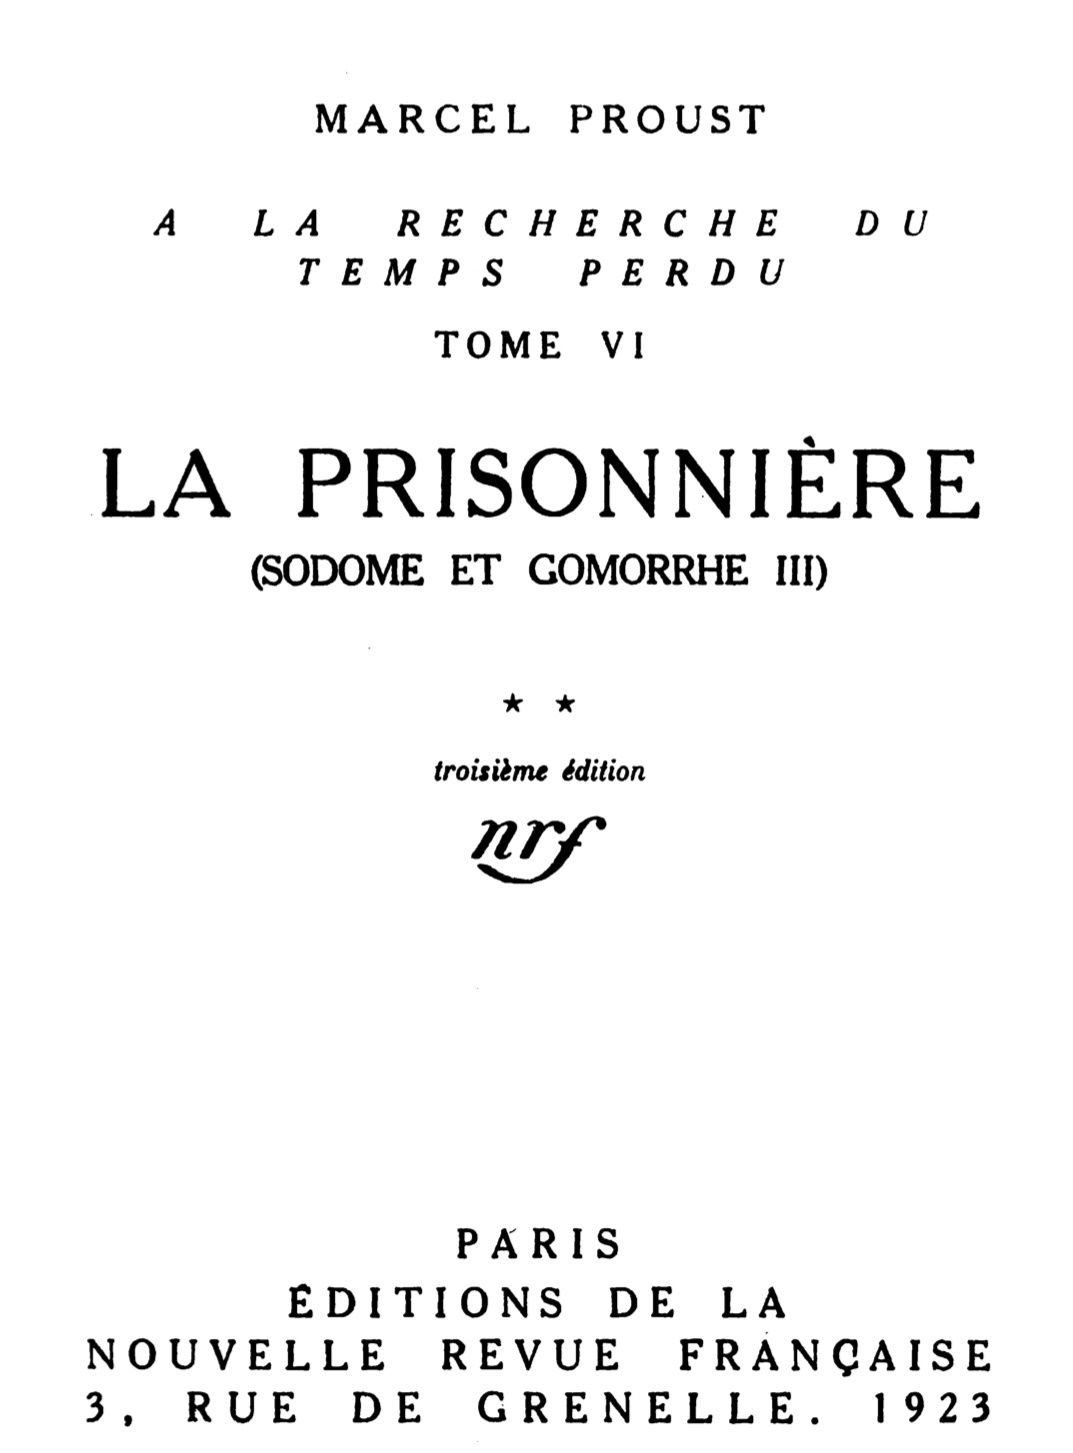 C Est Très Gentil De Ta Part The Project Gutenberg eBook of La Prisonnière (Sodome et Gomorrhe III), by  Marcel Proust.